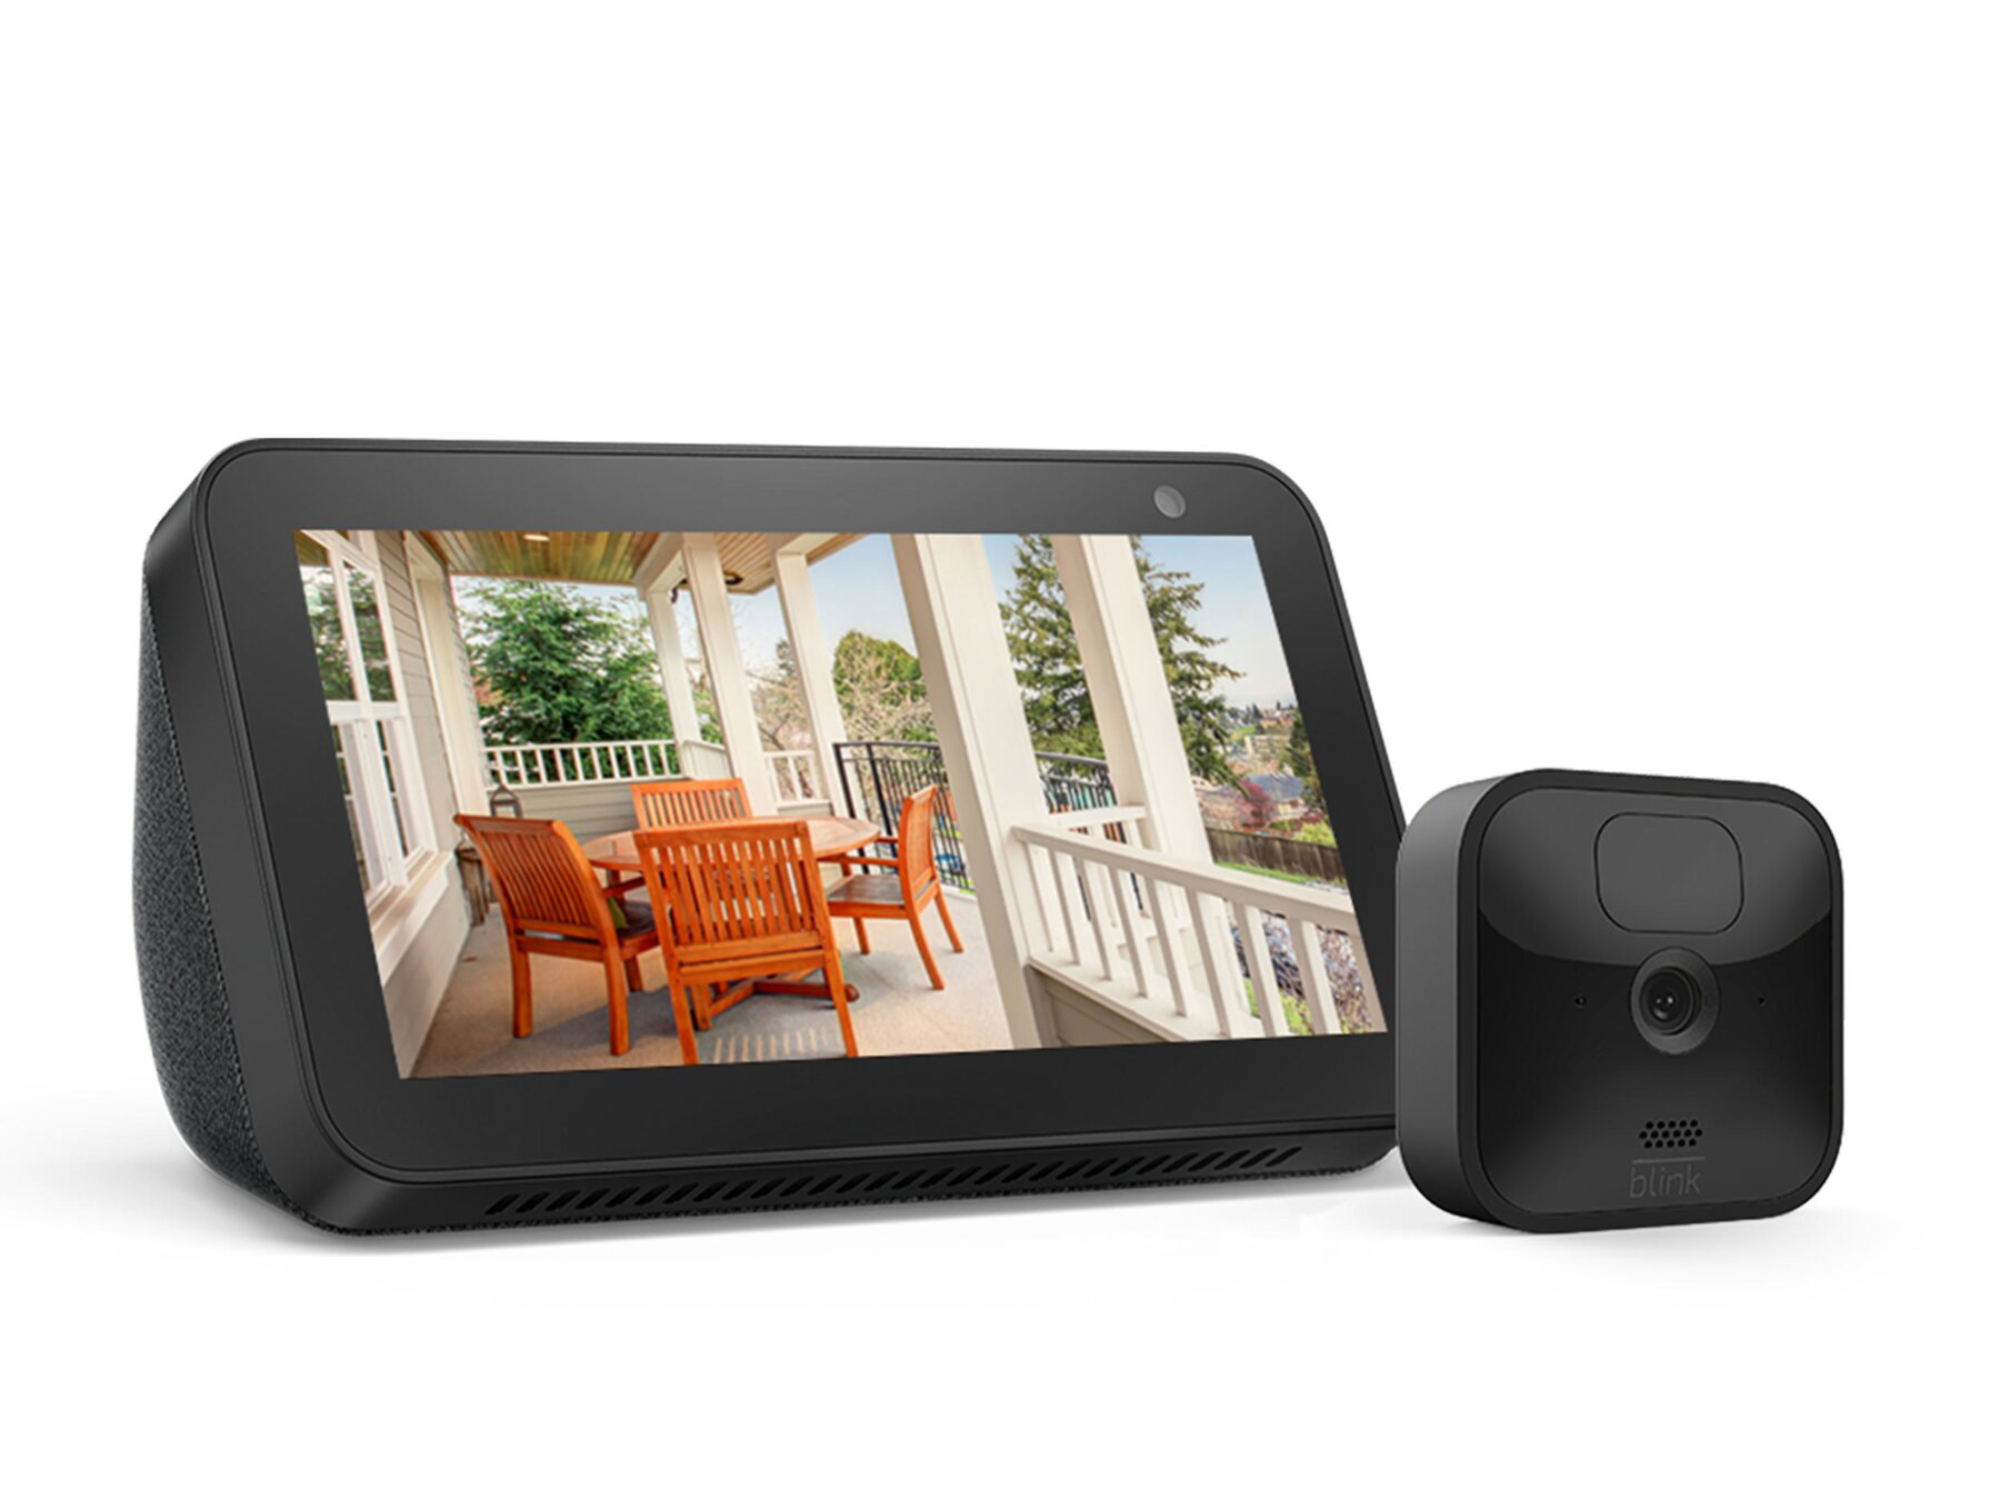 #Alexa-Gadgets: Smarte Outdoor Kamera & Echo Show 5 besonders billig